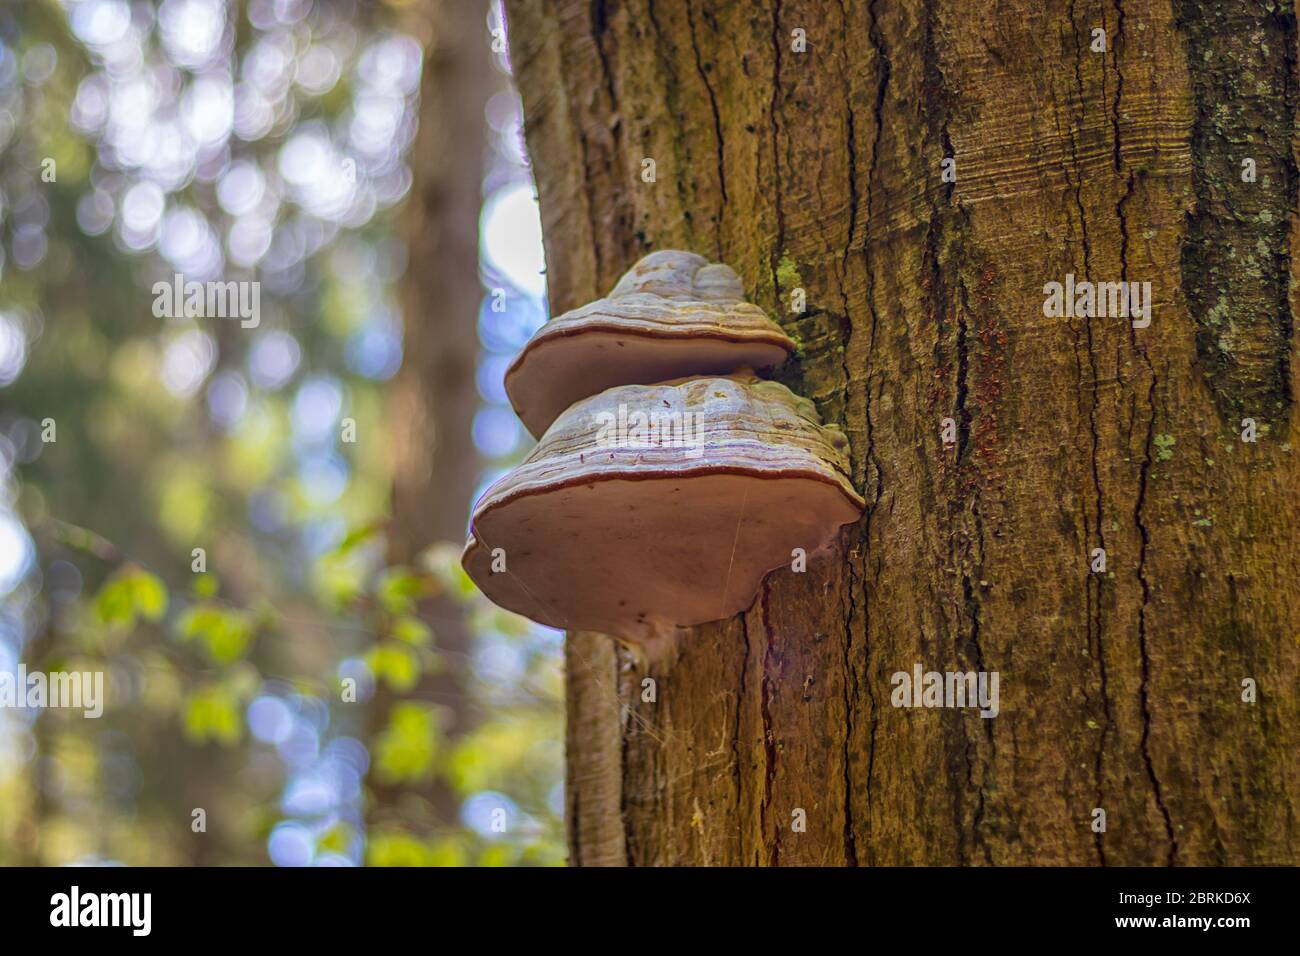 Poliboro - fungo su un tronco di albero, nella foresta, vista ravvicinata Foto Stock